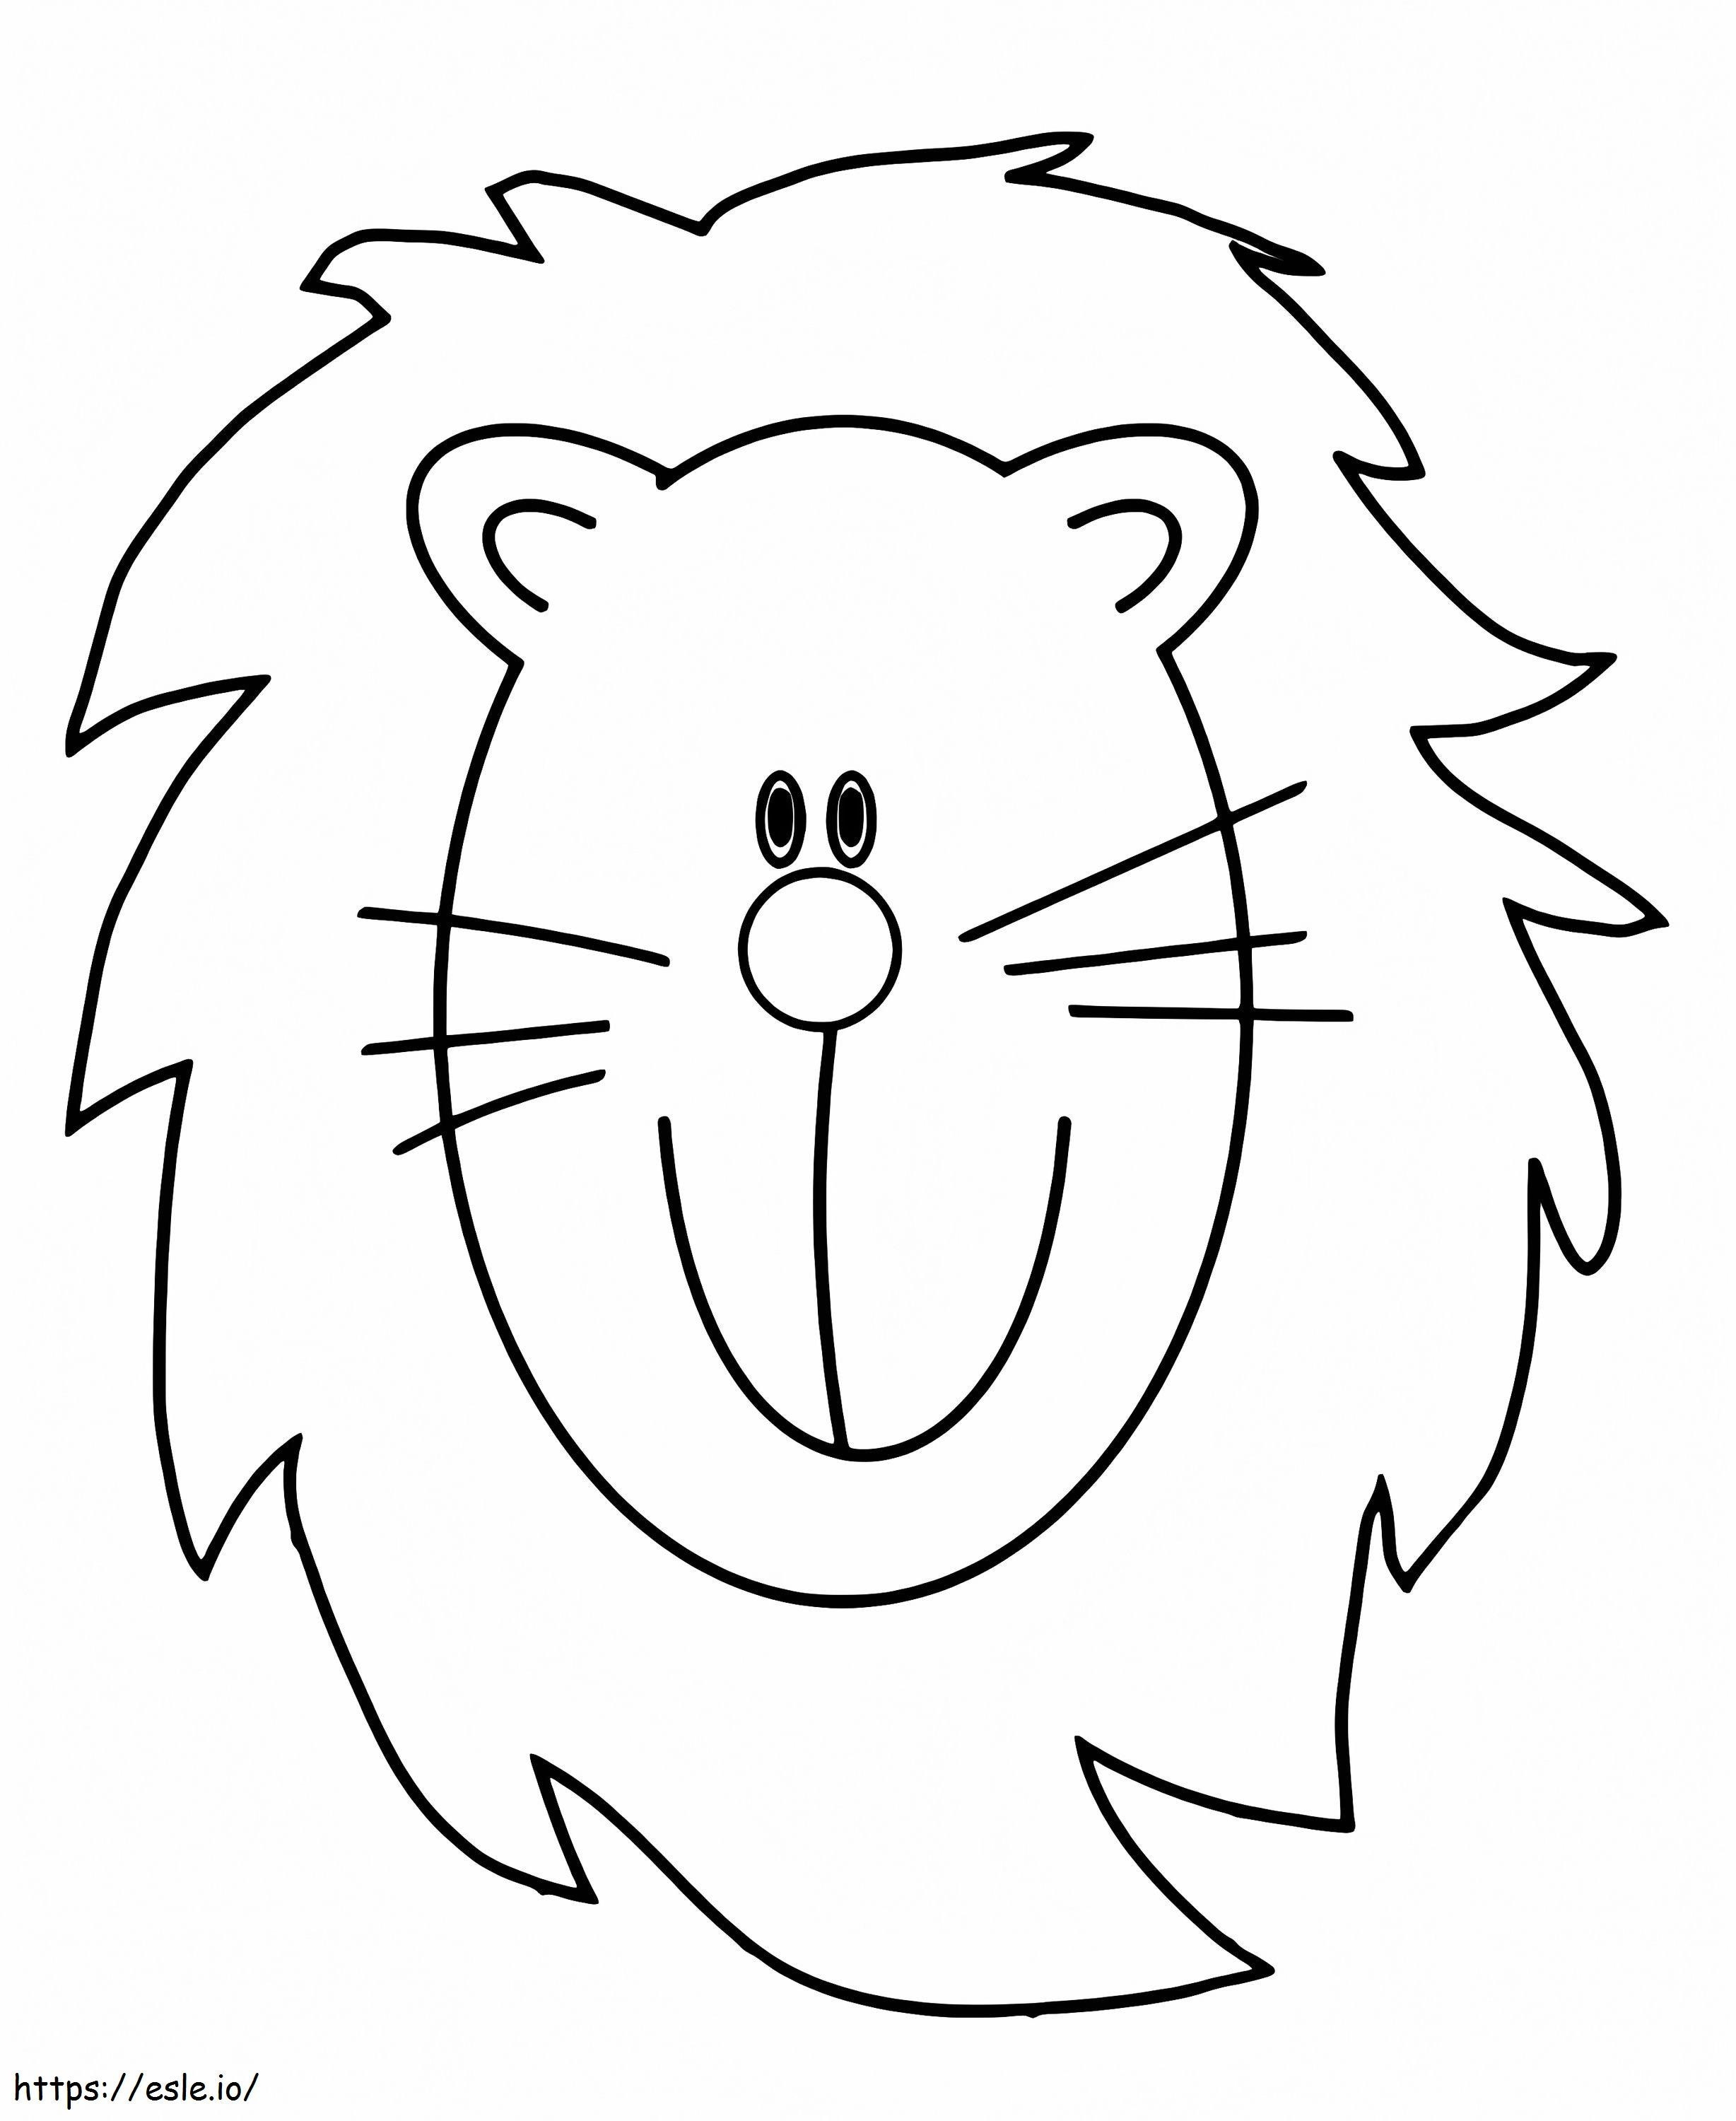 Cara de león gratis para colorear para colorear